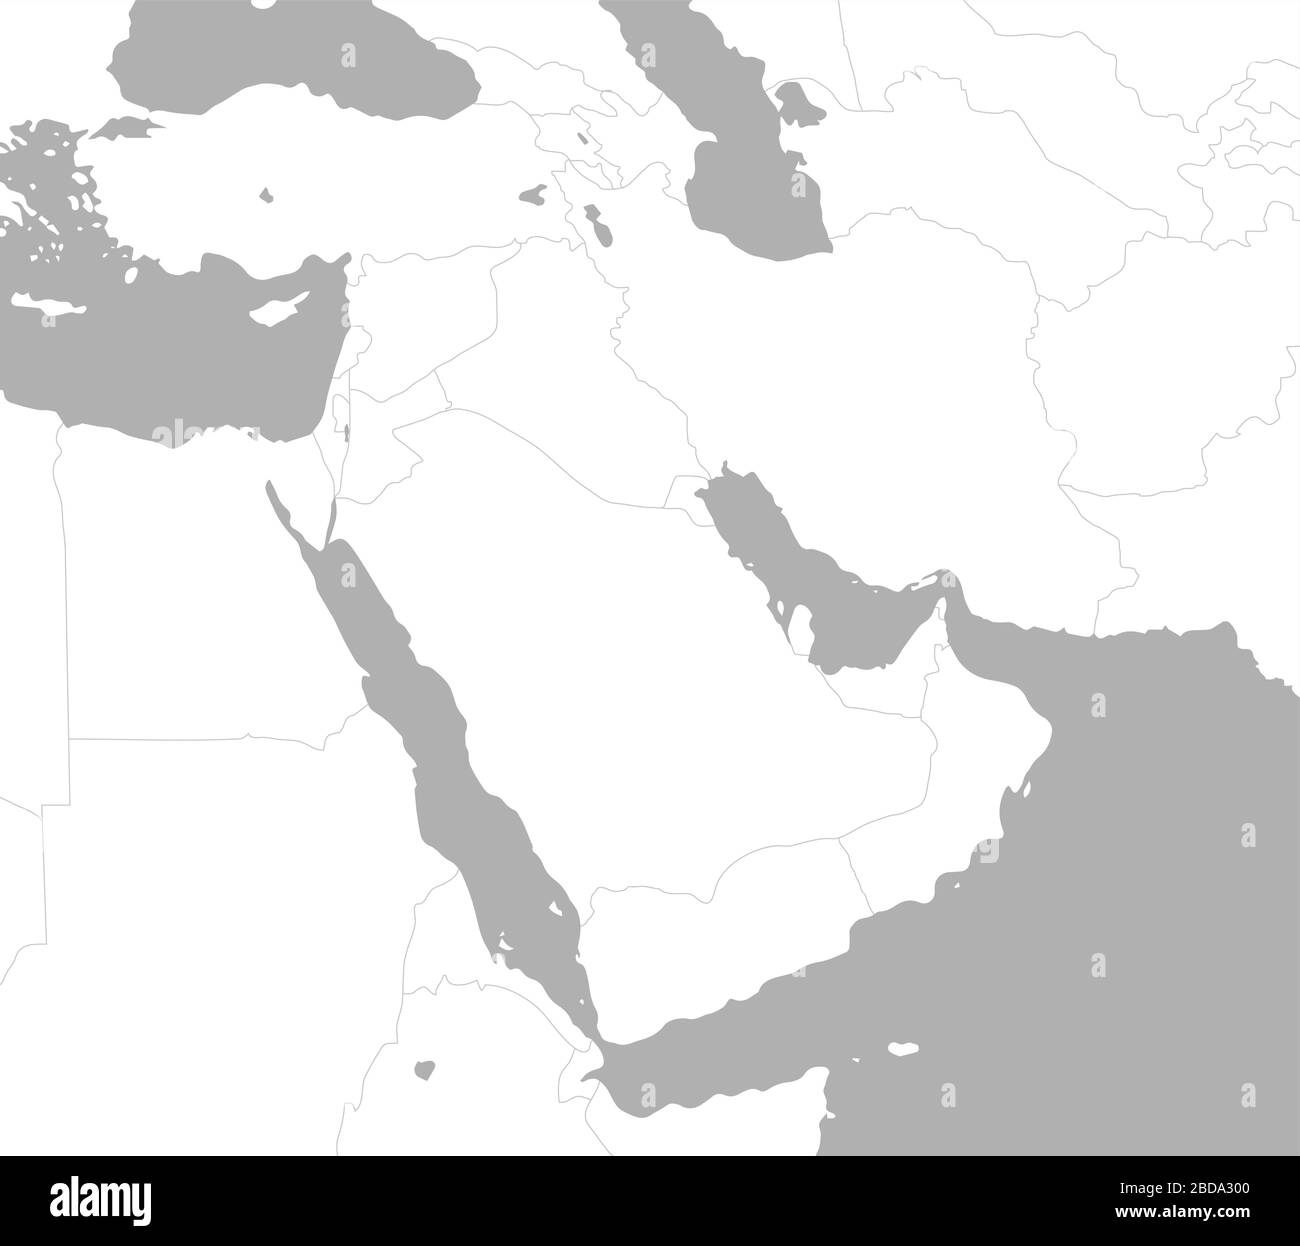 Mittlerer Osten, arabische Länder Karte / kein Text Stock Vektor